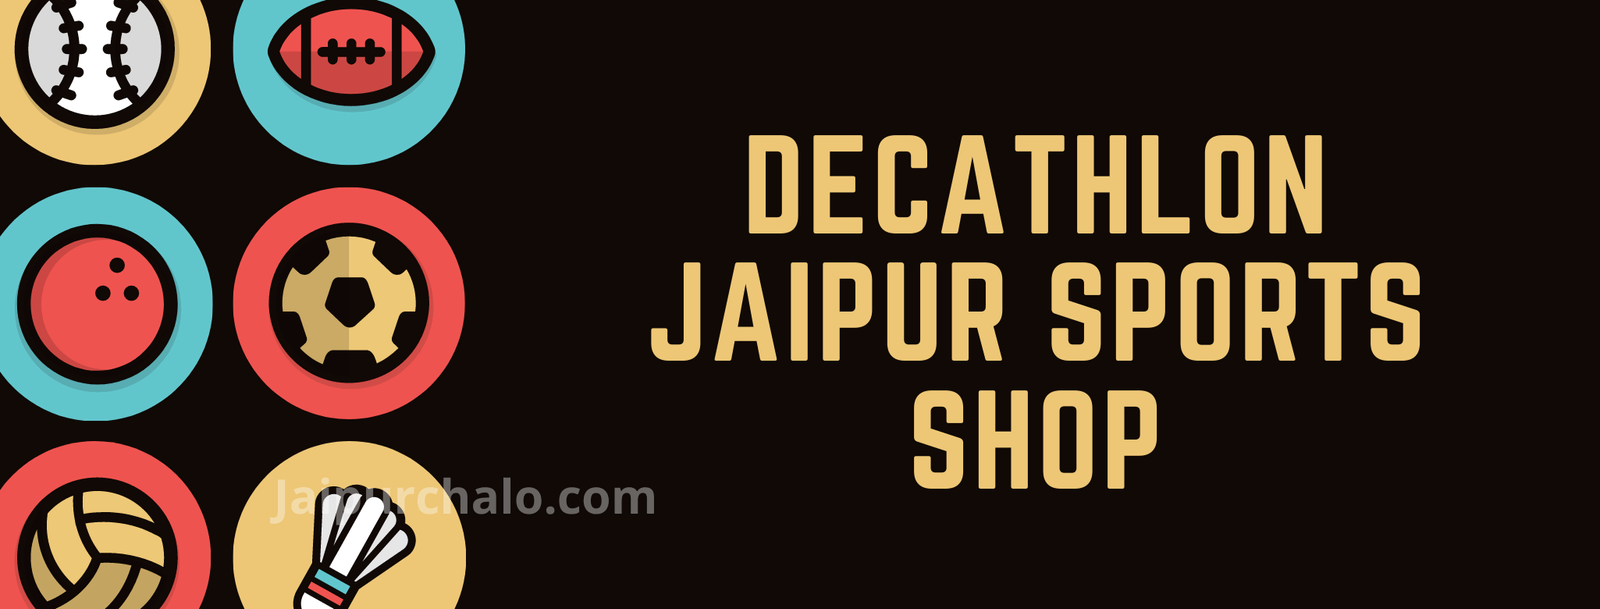 Decathlon Jaipur Sports Shop